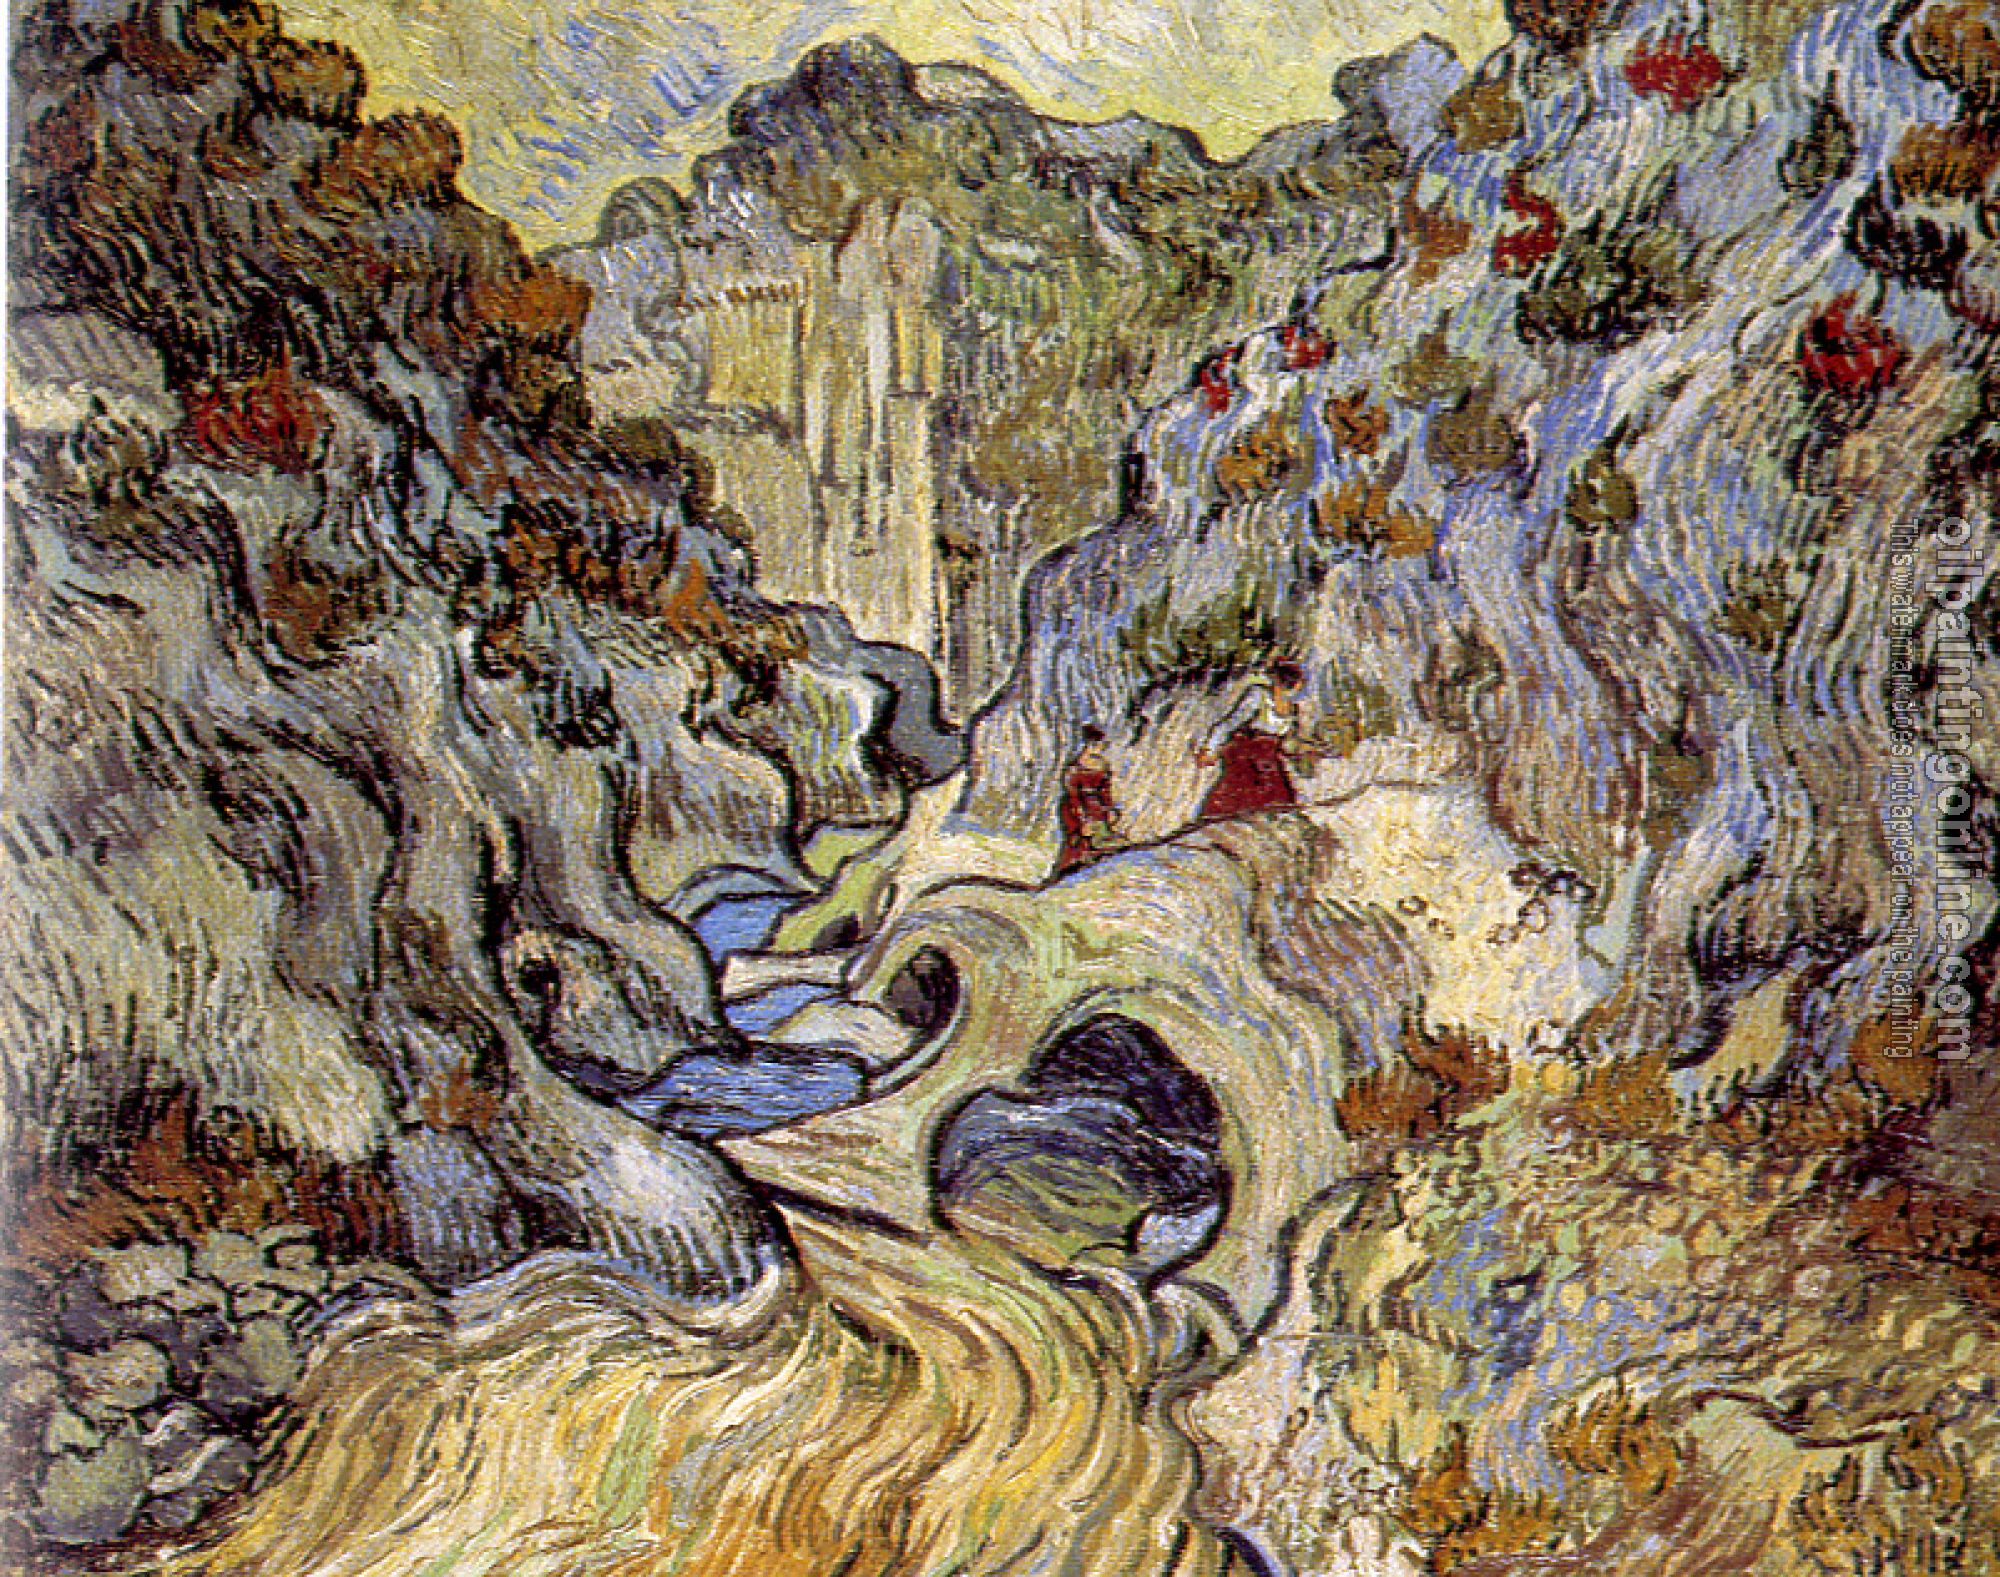 Gogh, Vincent van - A Path through the Ravine